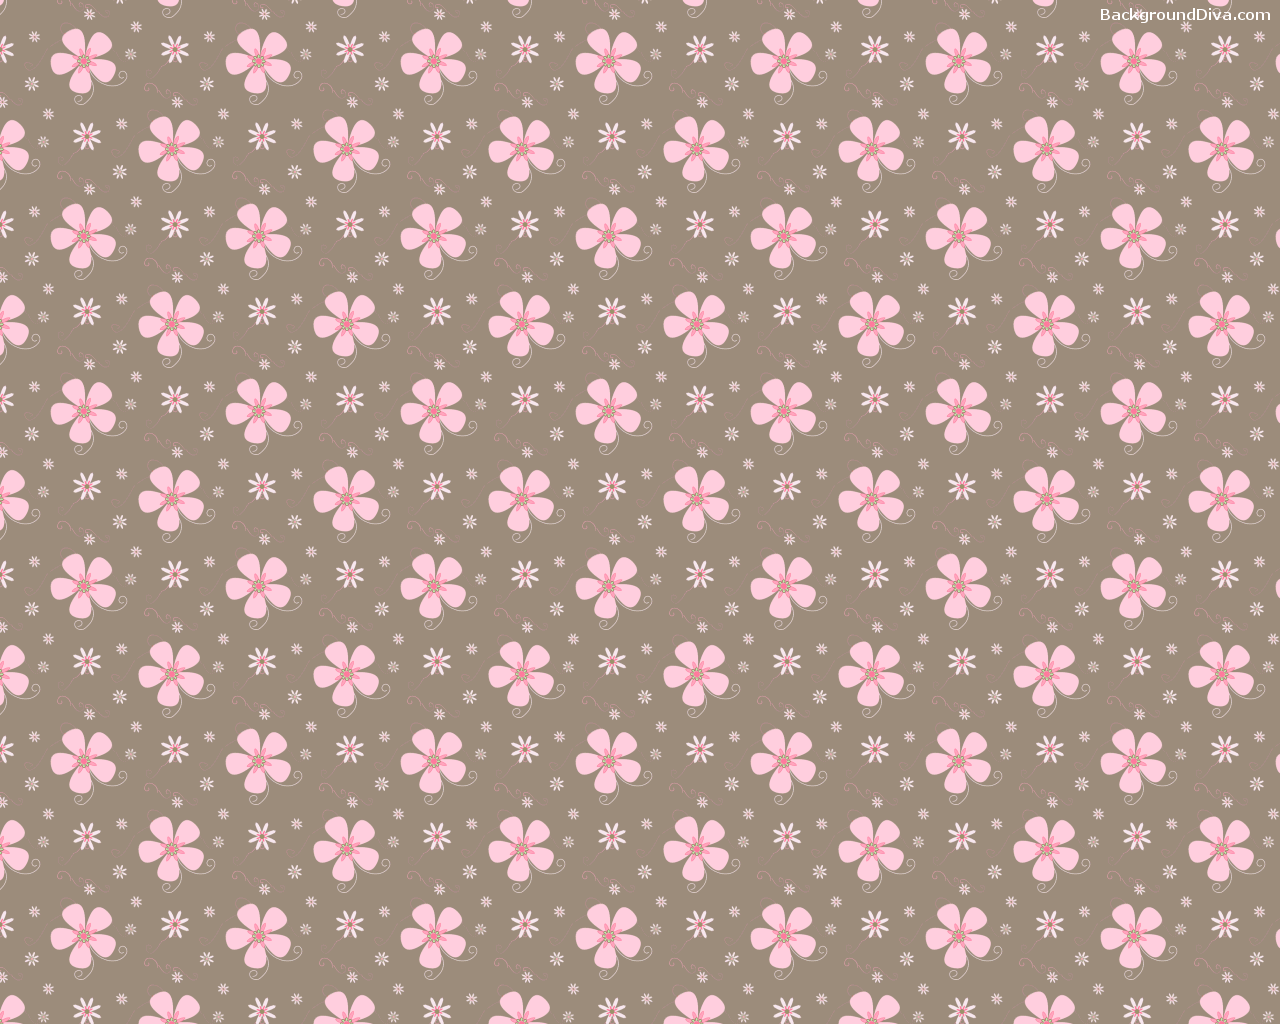 Pink and Brown Wallpaper - WallpaperSafari